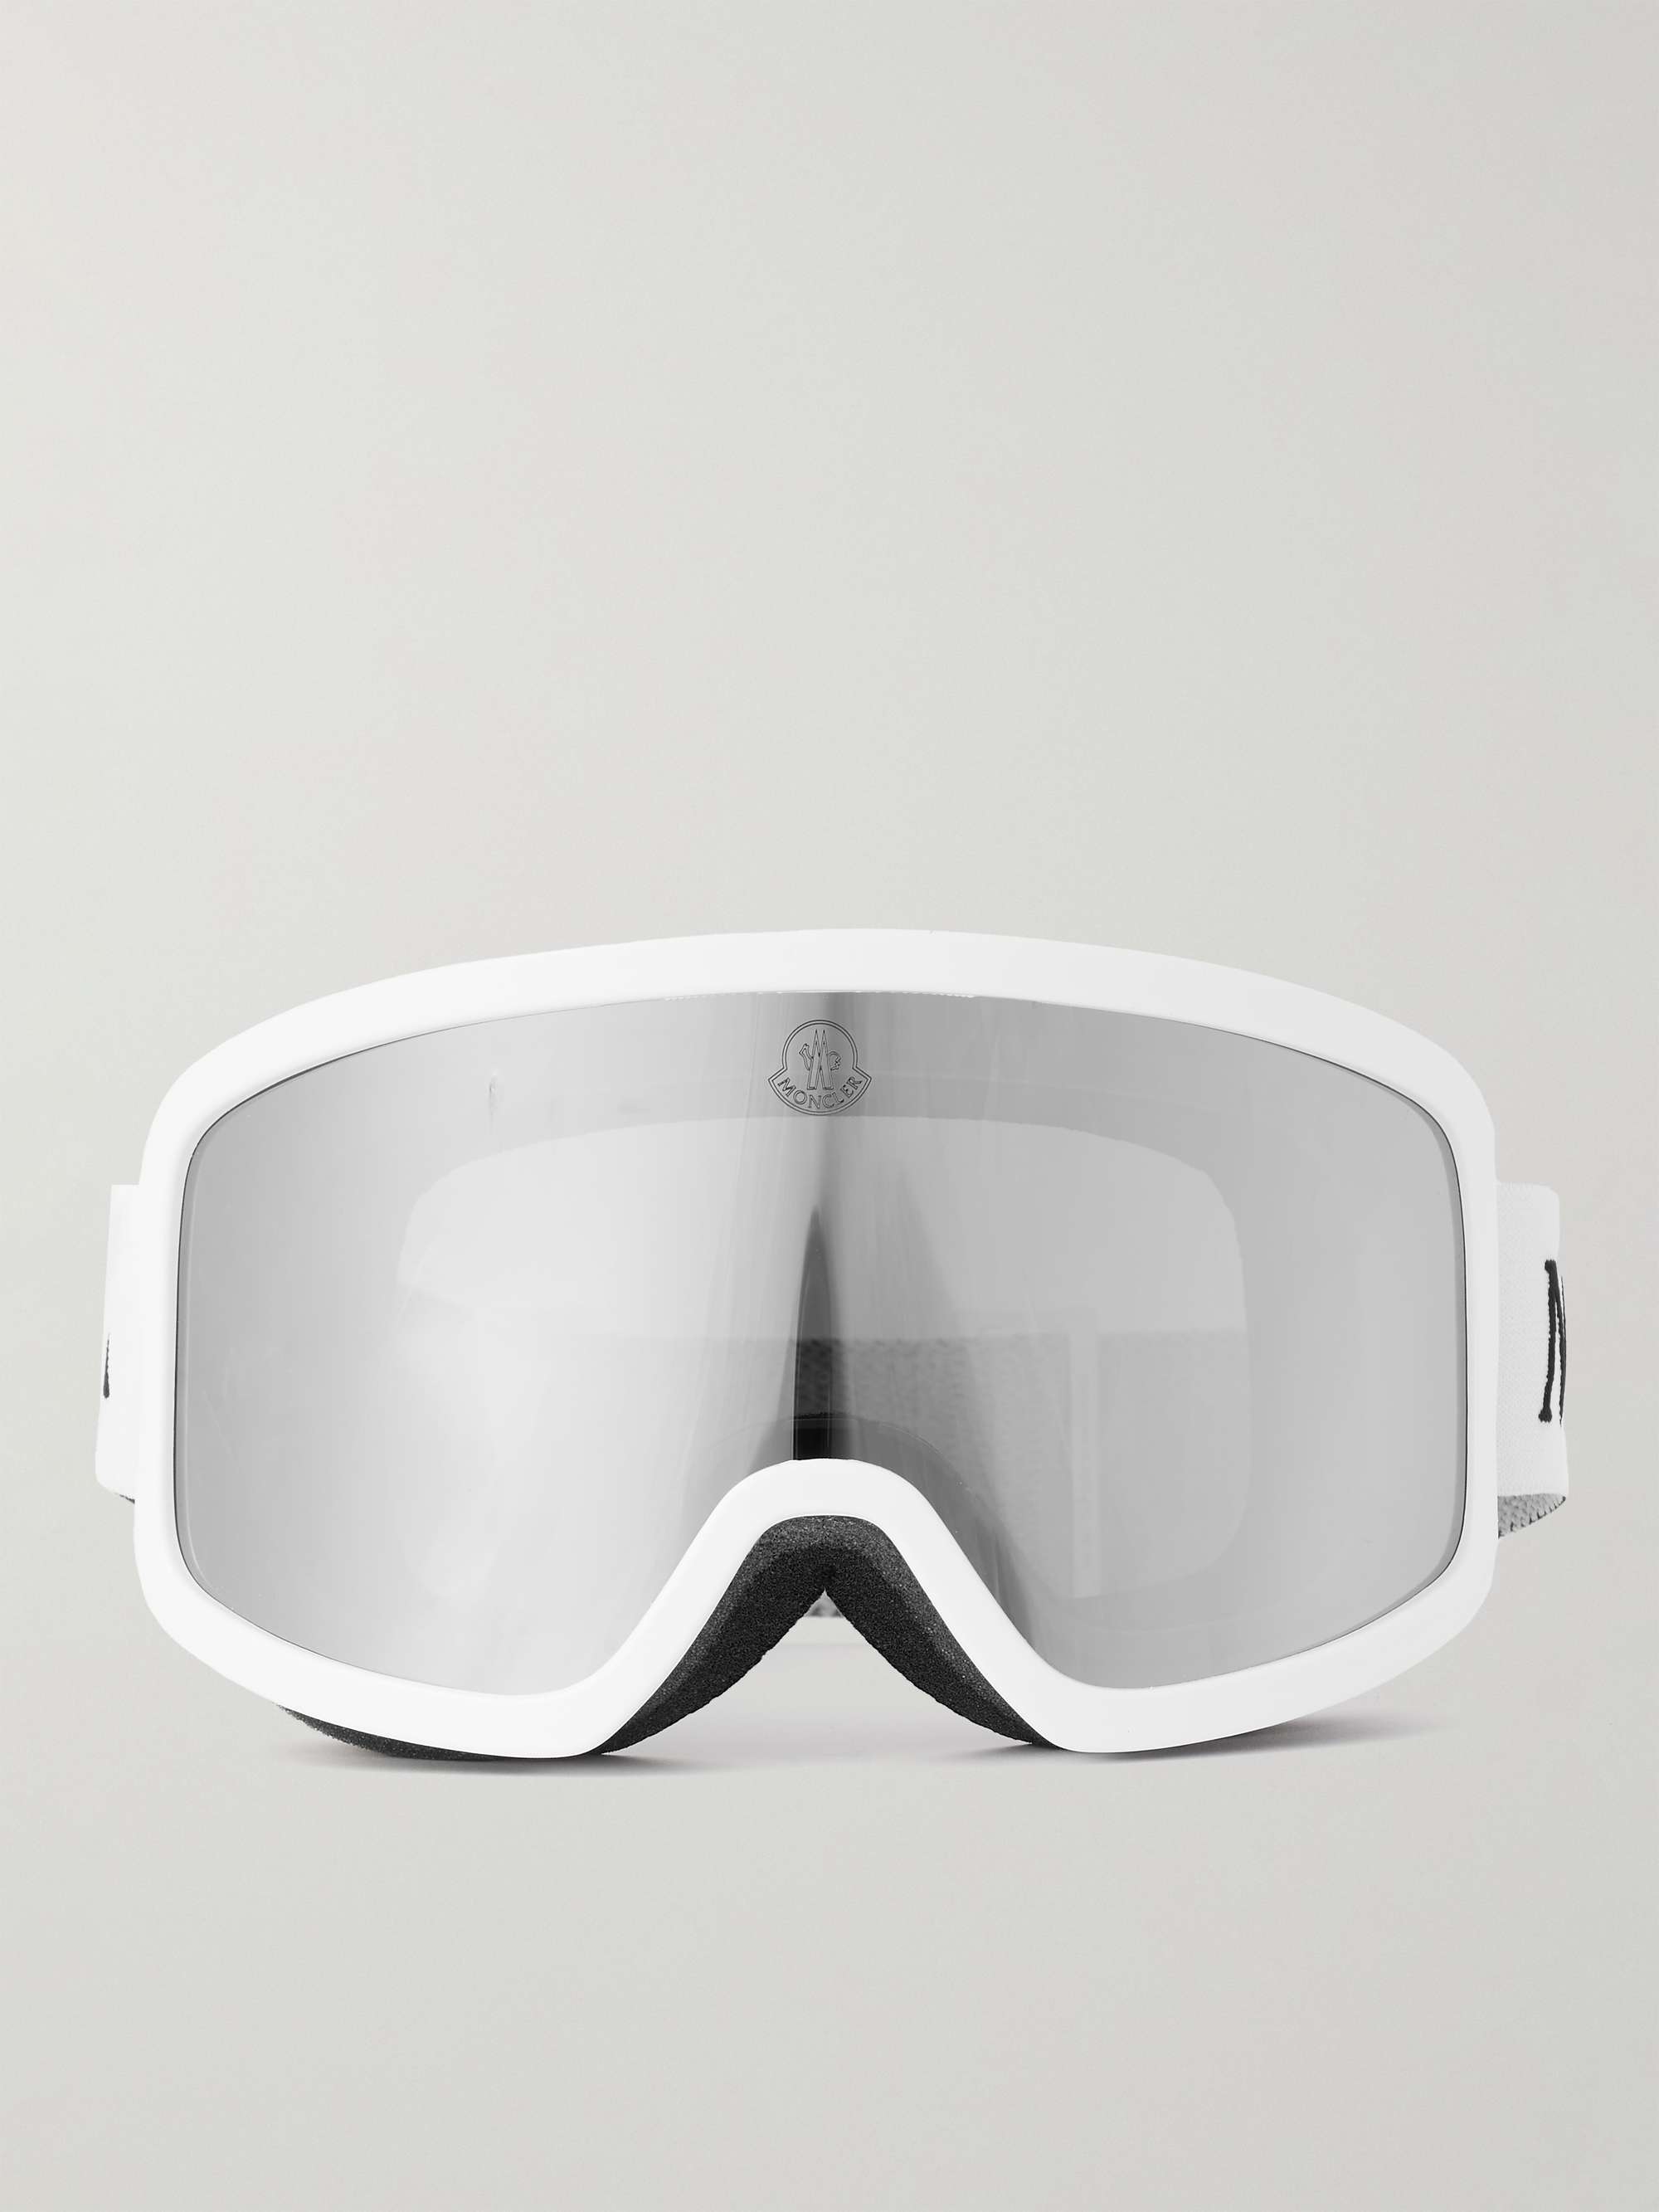 Terrabeam S3 Ski Goggles